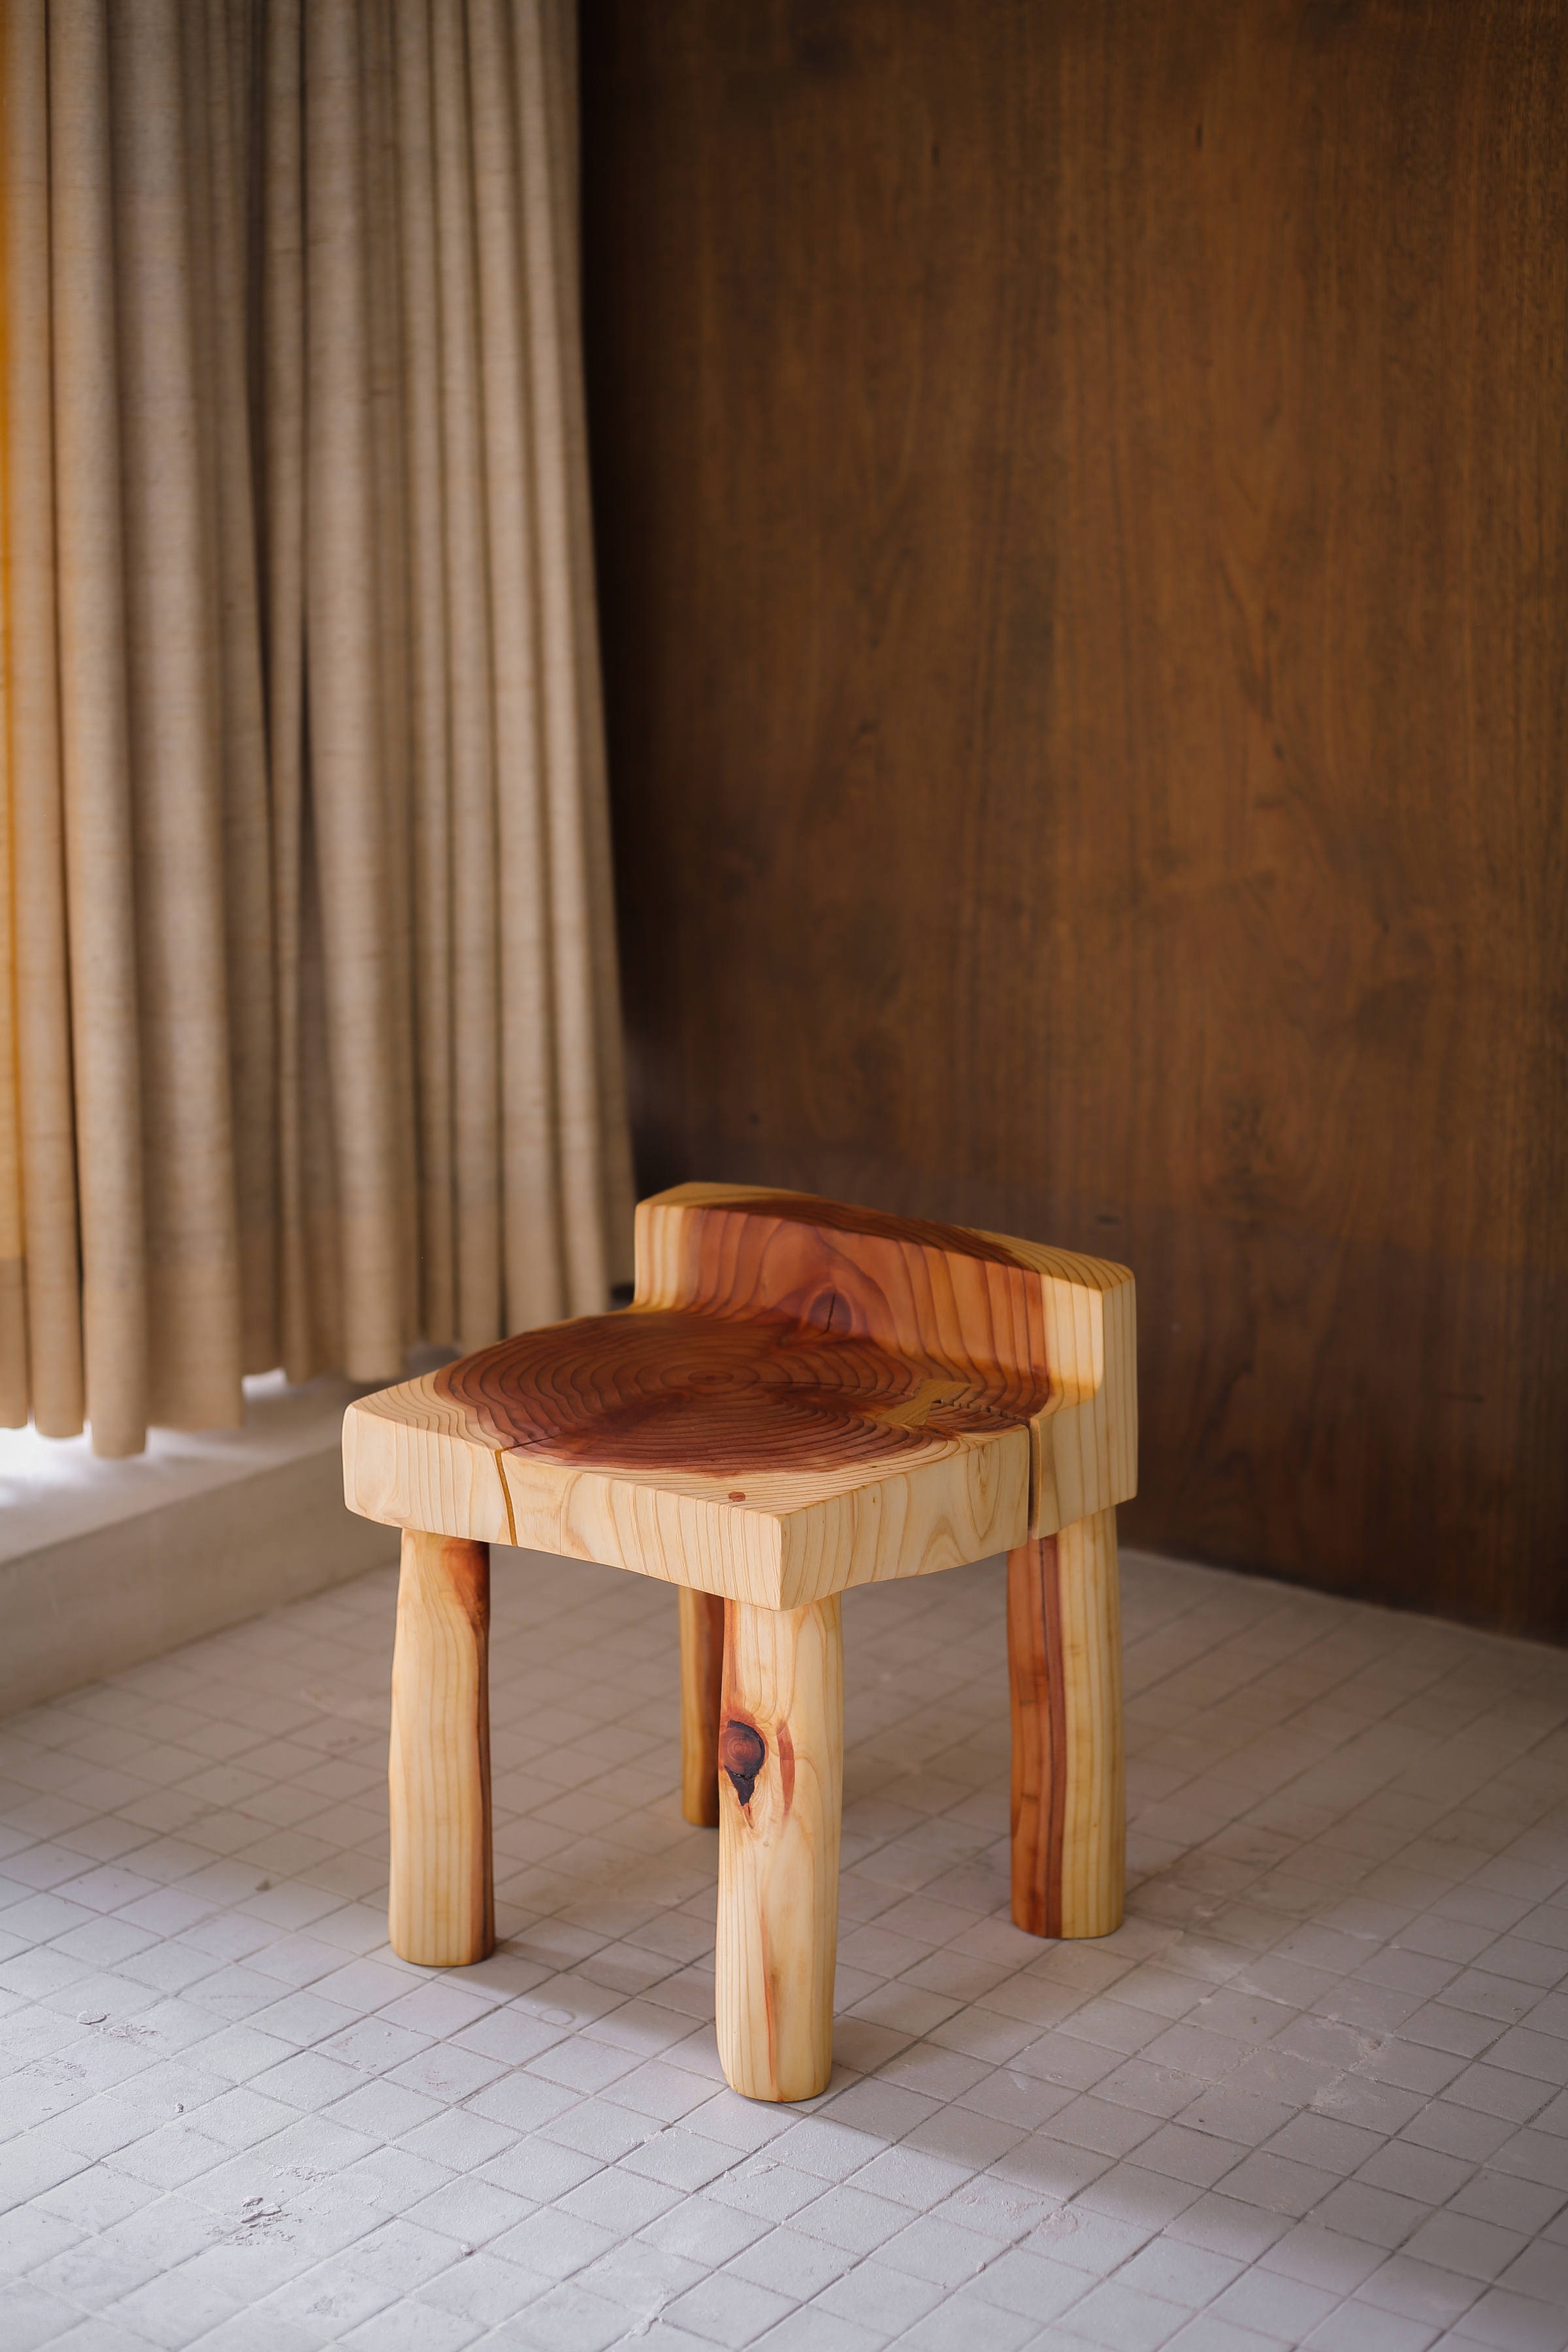 Aurora Chair, 2021
wood (sequoia)
15 3/4h x 12 1/2w x 12 1/2d in
40.01h x 31.75w x 31.75d cm
VS_2021_0025
&nbsp;